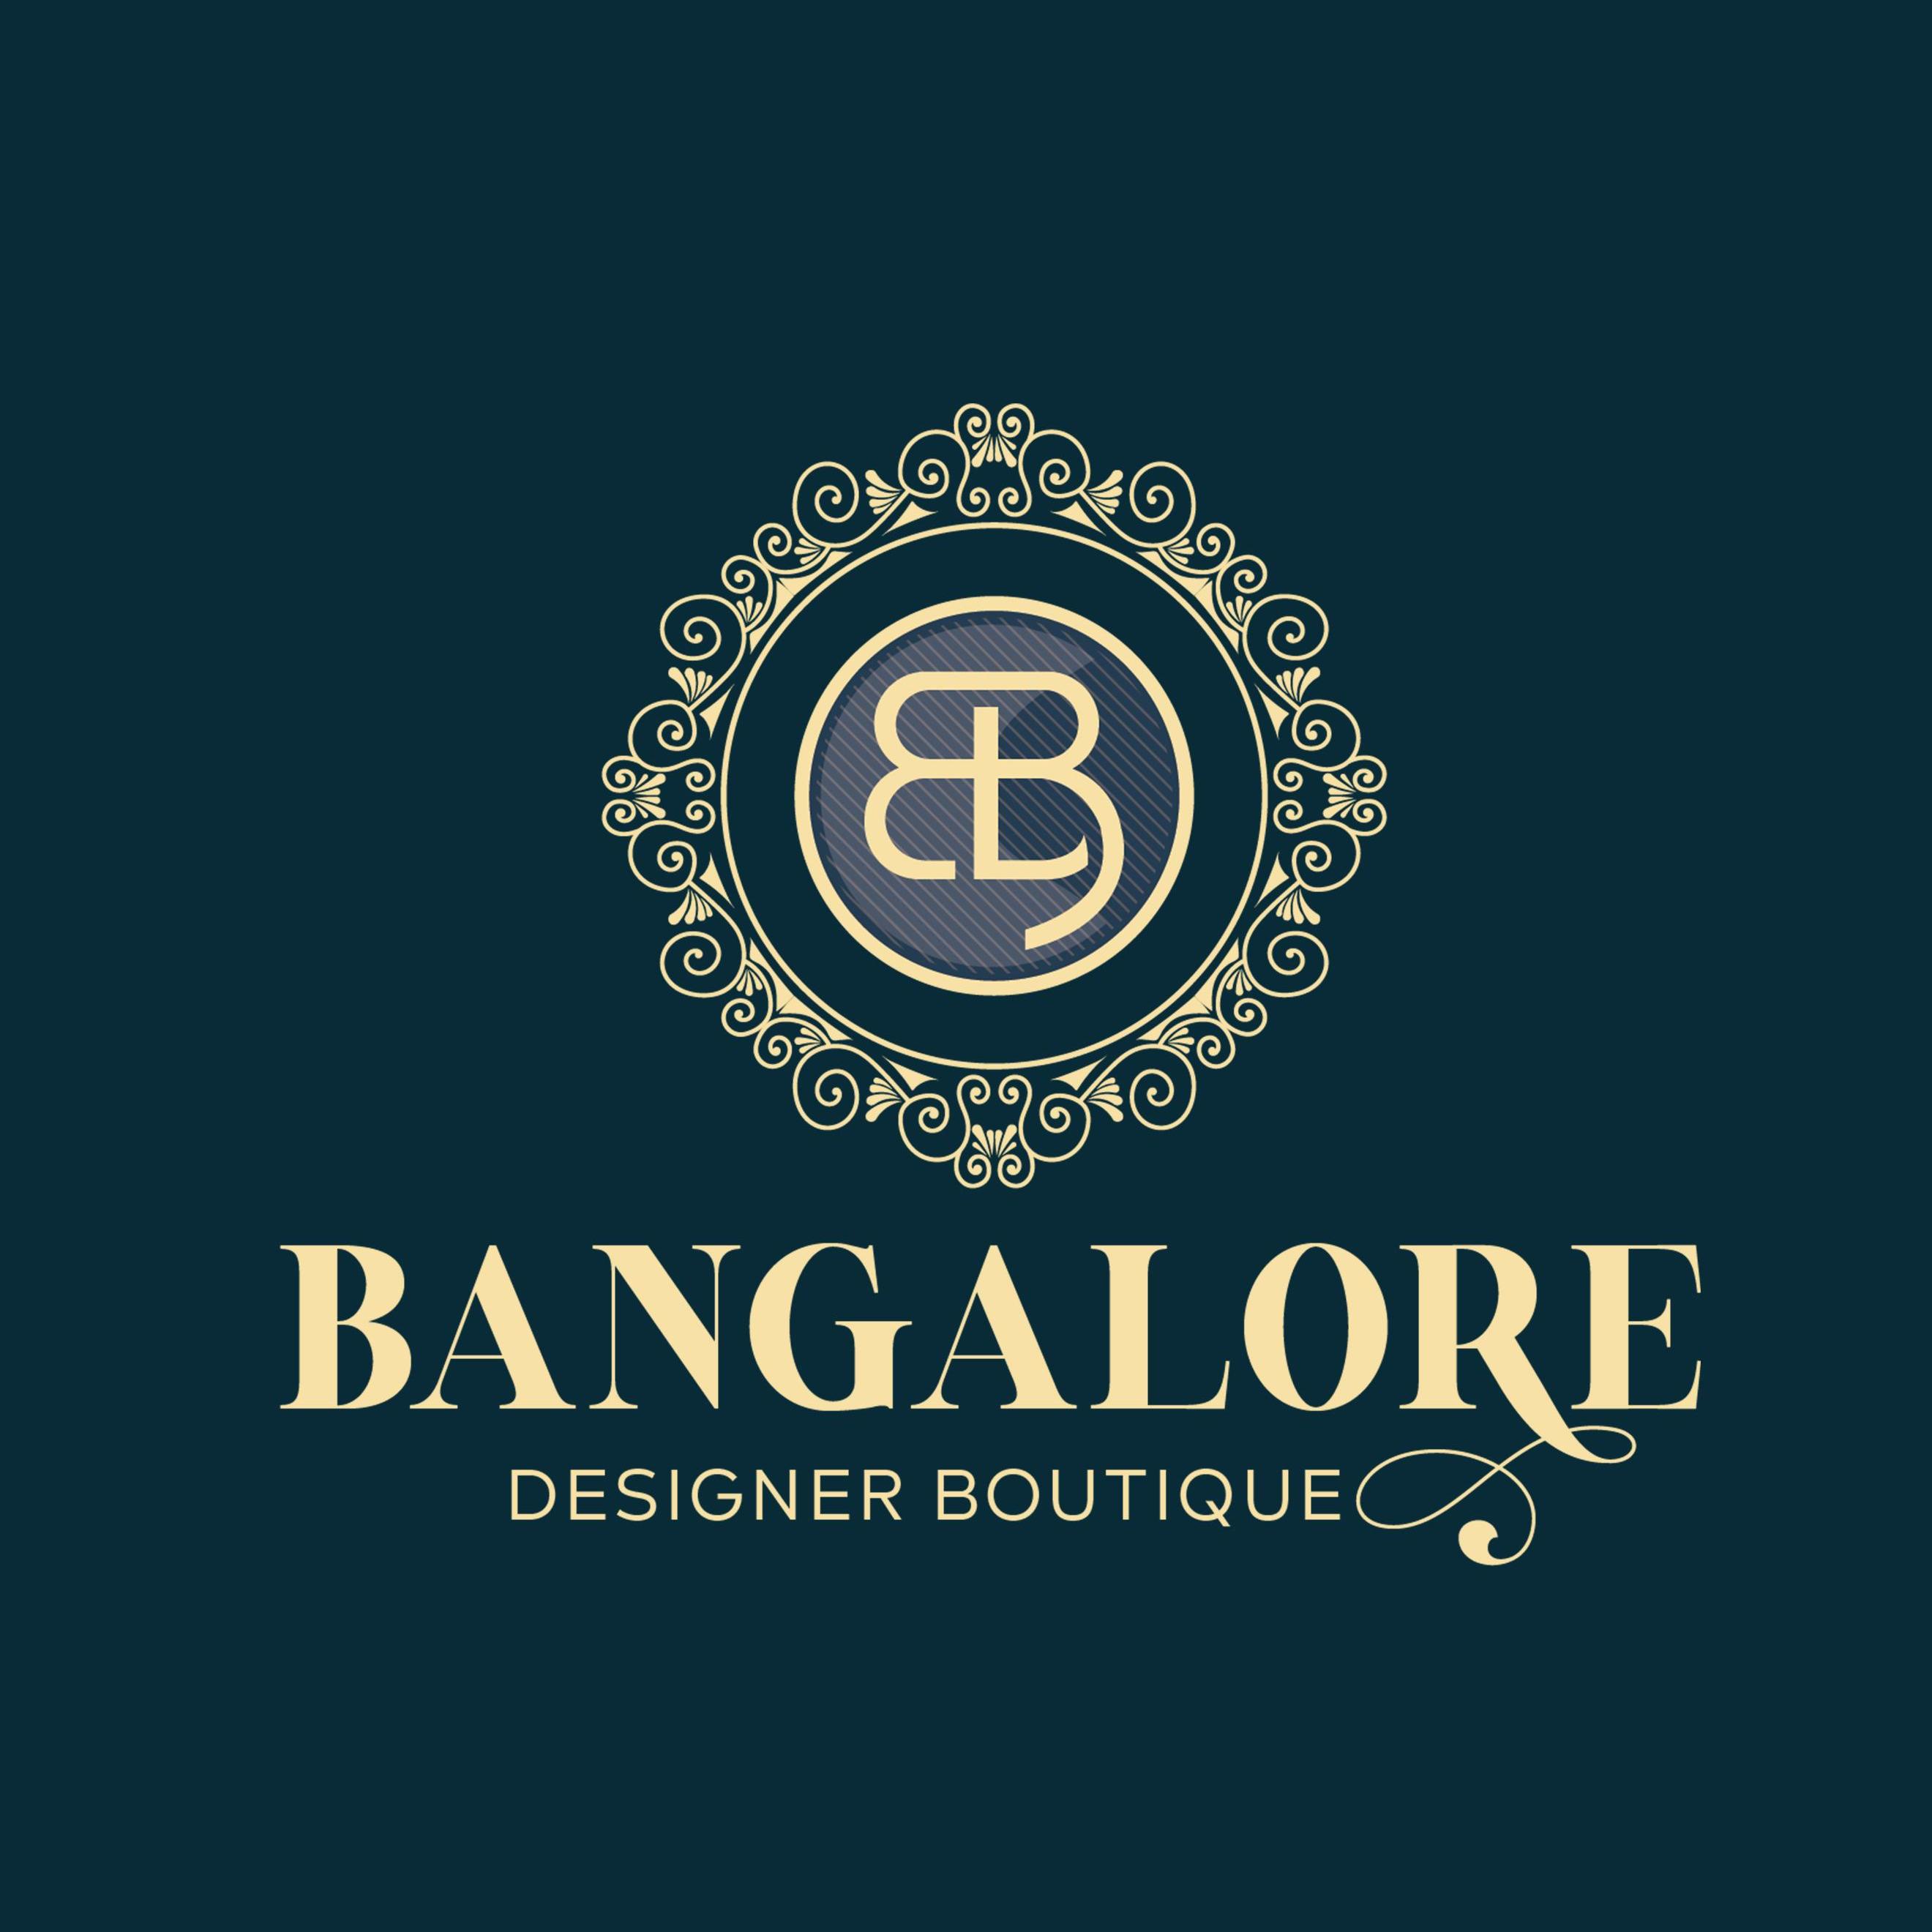 Bangalore Designer Boutique